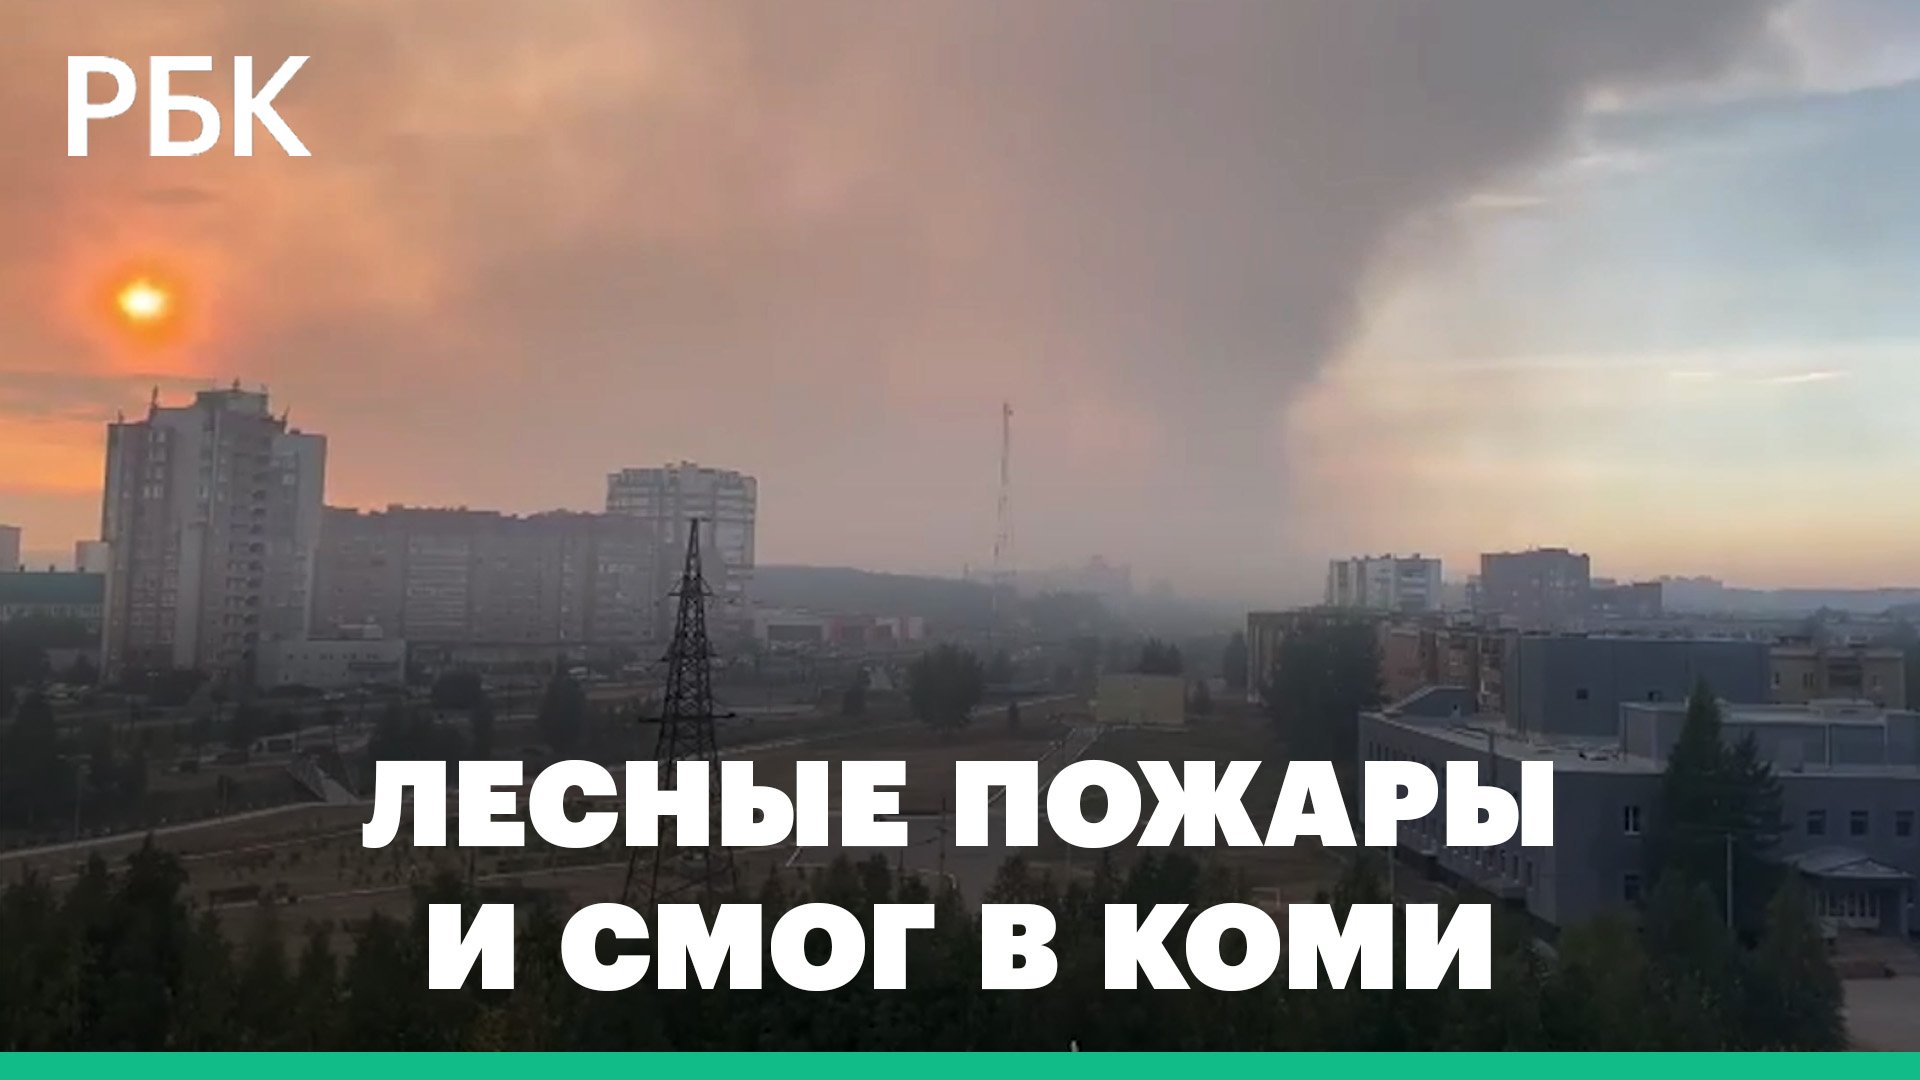 В Коми бушуют лесные пожары. Смог накрыл крупнейшие города республики, в том числе Сыктывкар